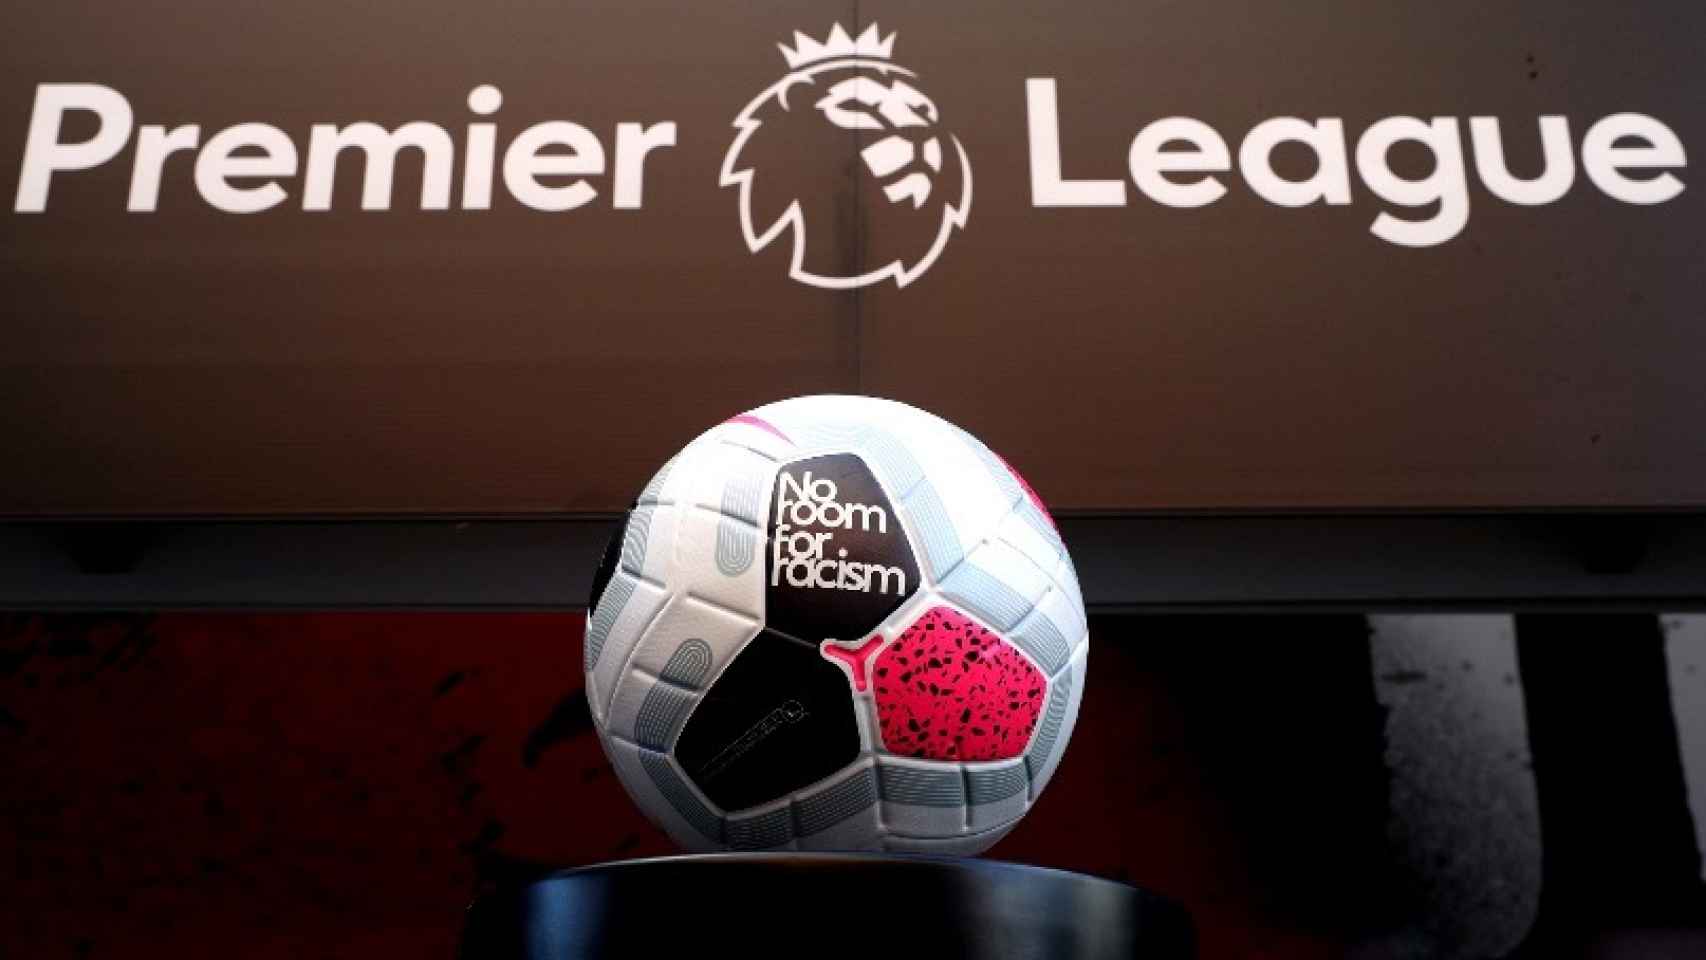 La Premier League será una de las primeras ligas europeas en volver